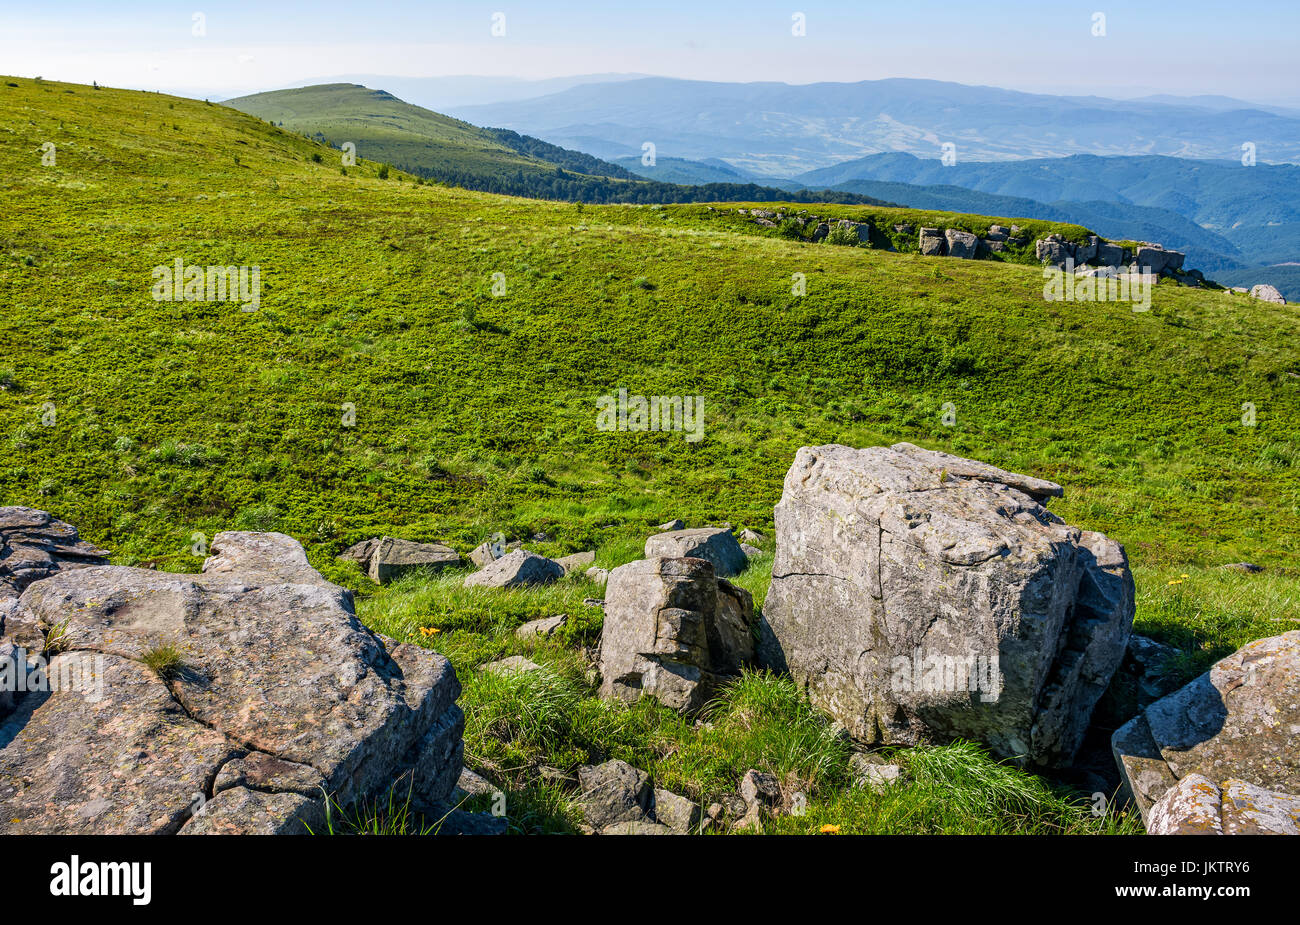 Berg-Sommer-Landschaft. Wiese mit riesigen Felsen unter dem Rasen oben auf dem Hügel in der Nähe der Spitze des Bergrückens Stockfoto